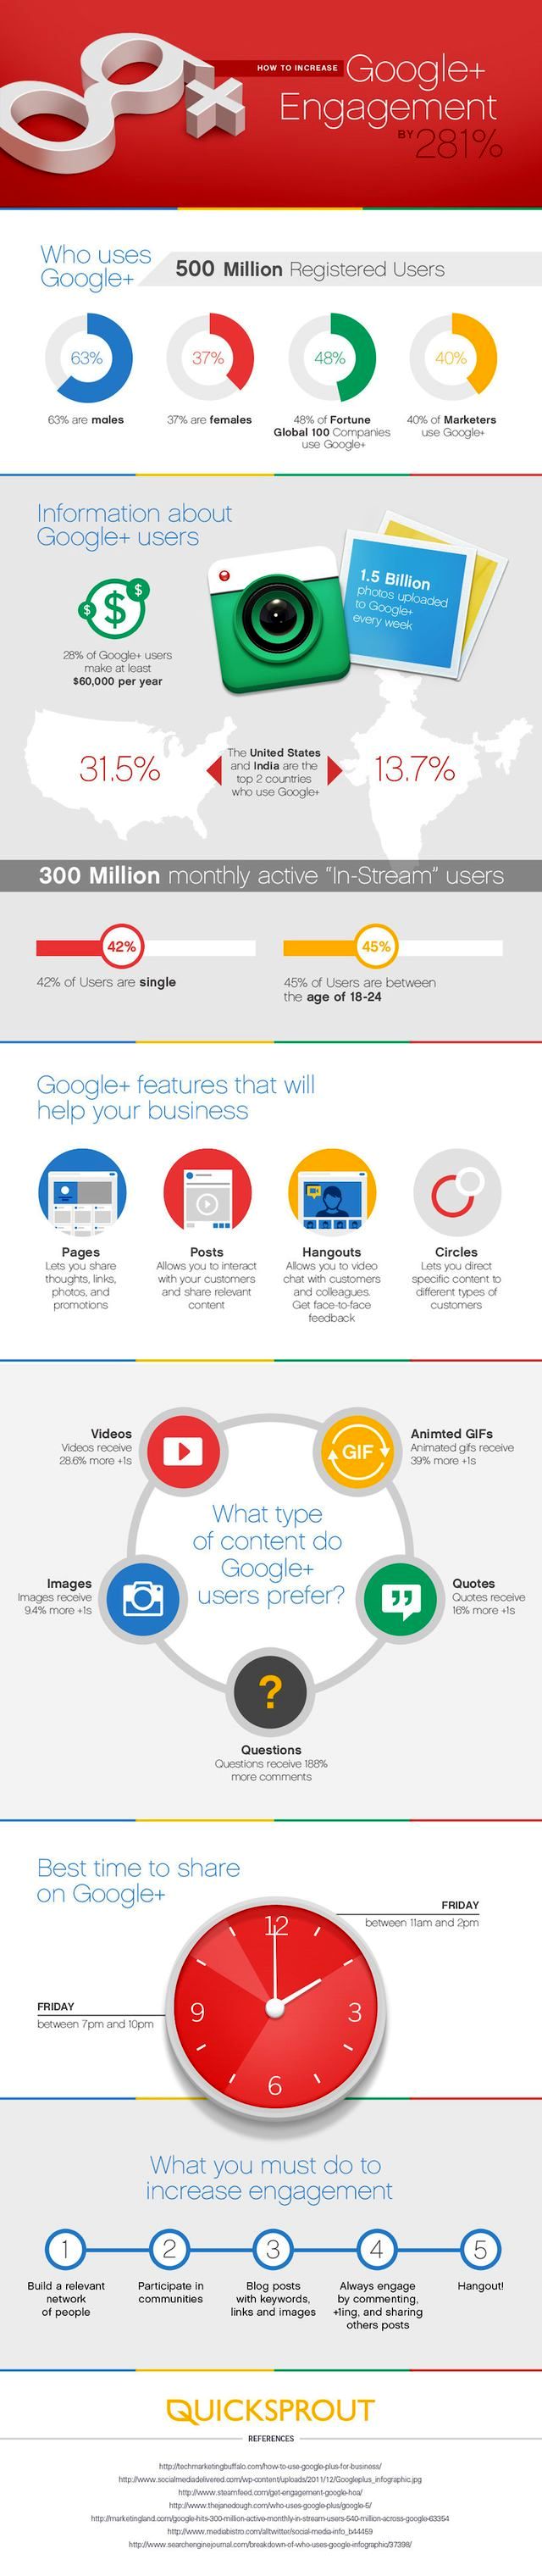 Cómo aumentar la interactividad de una cuenta de Google+